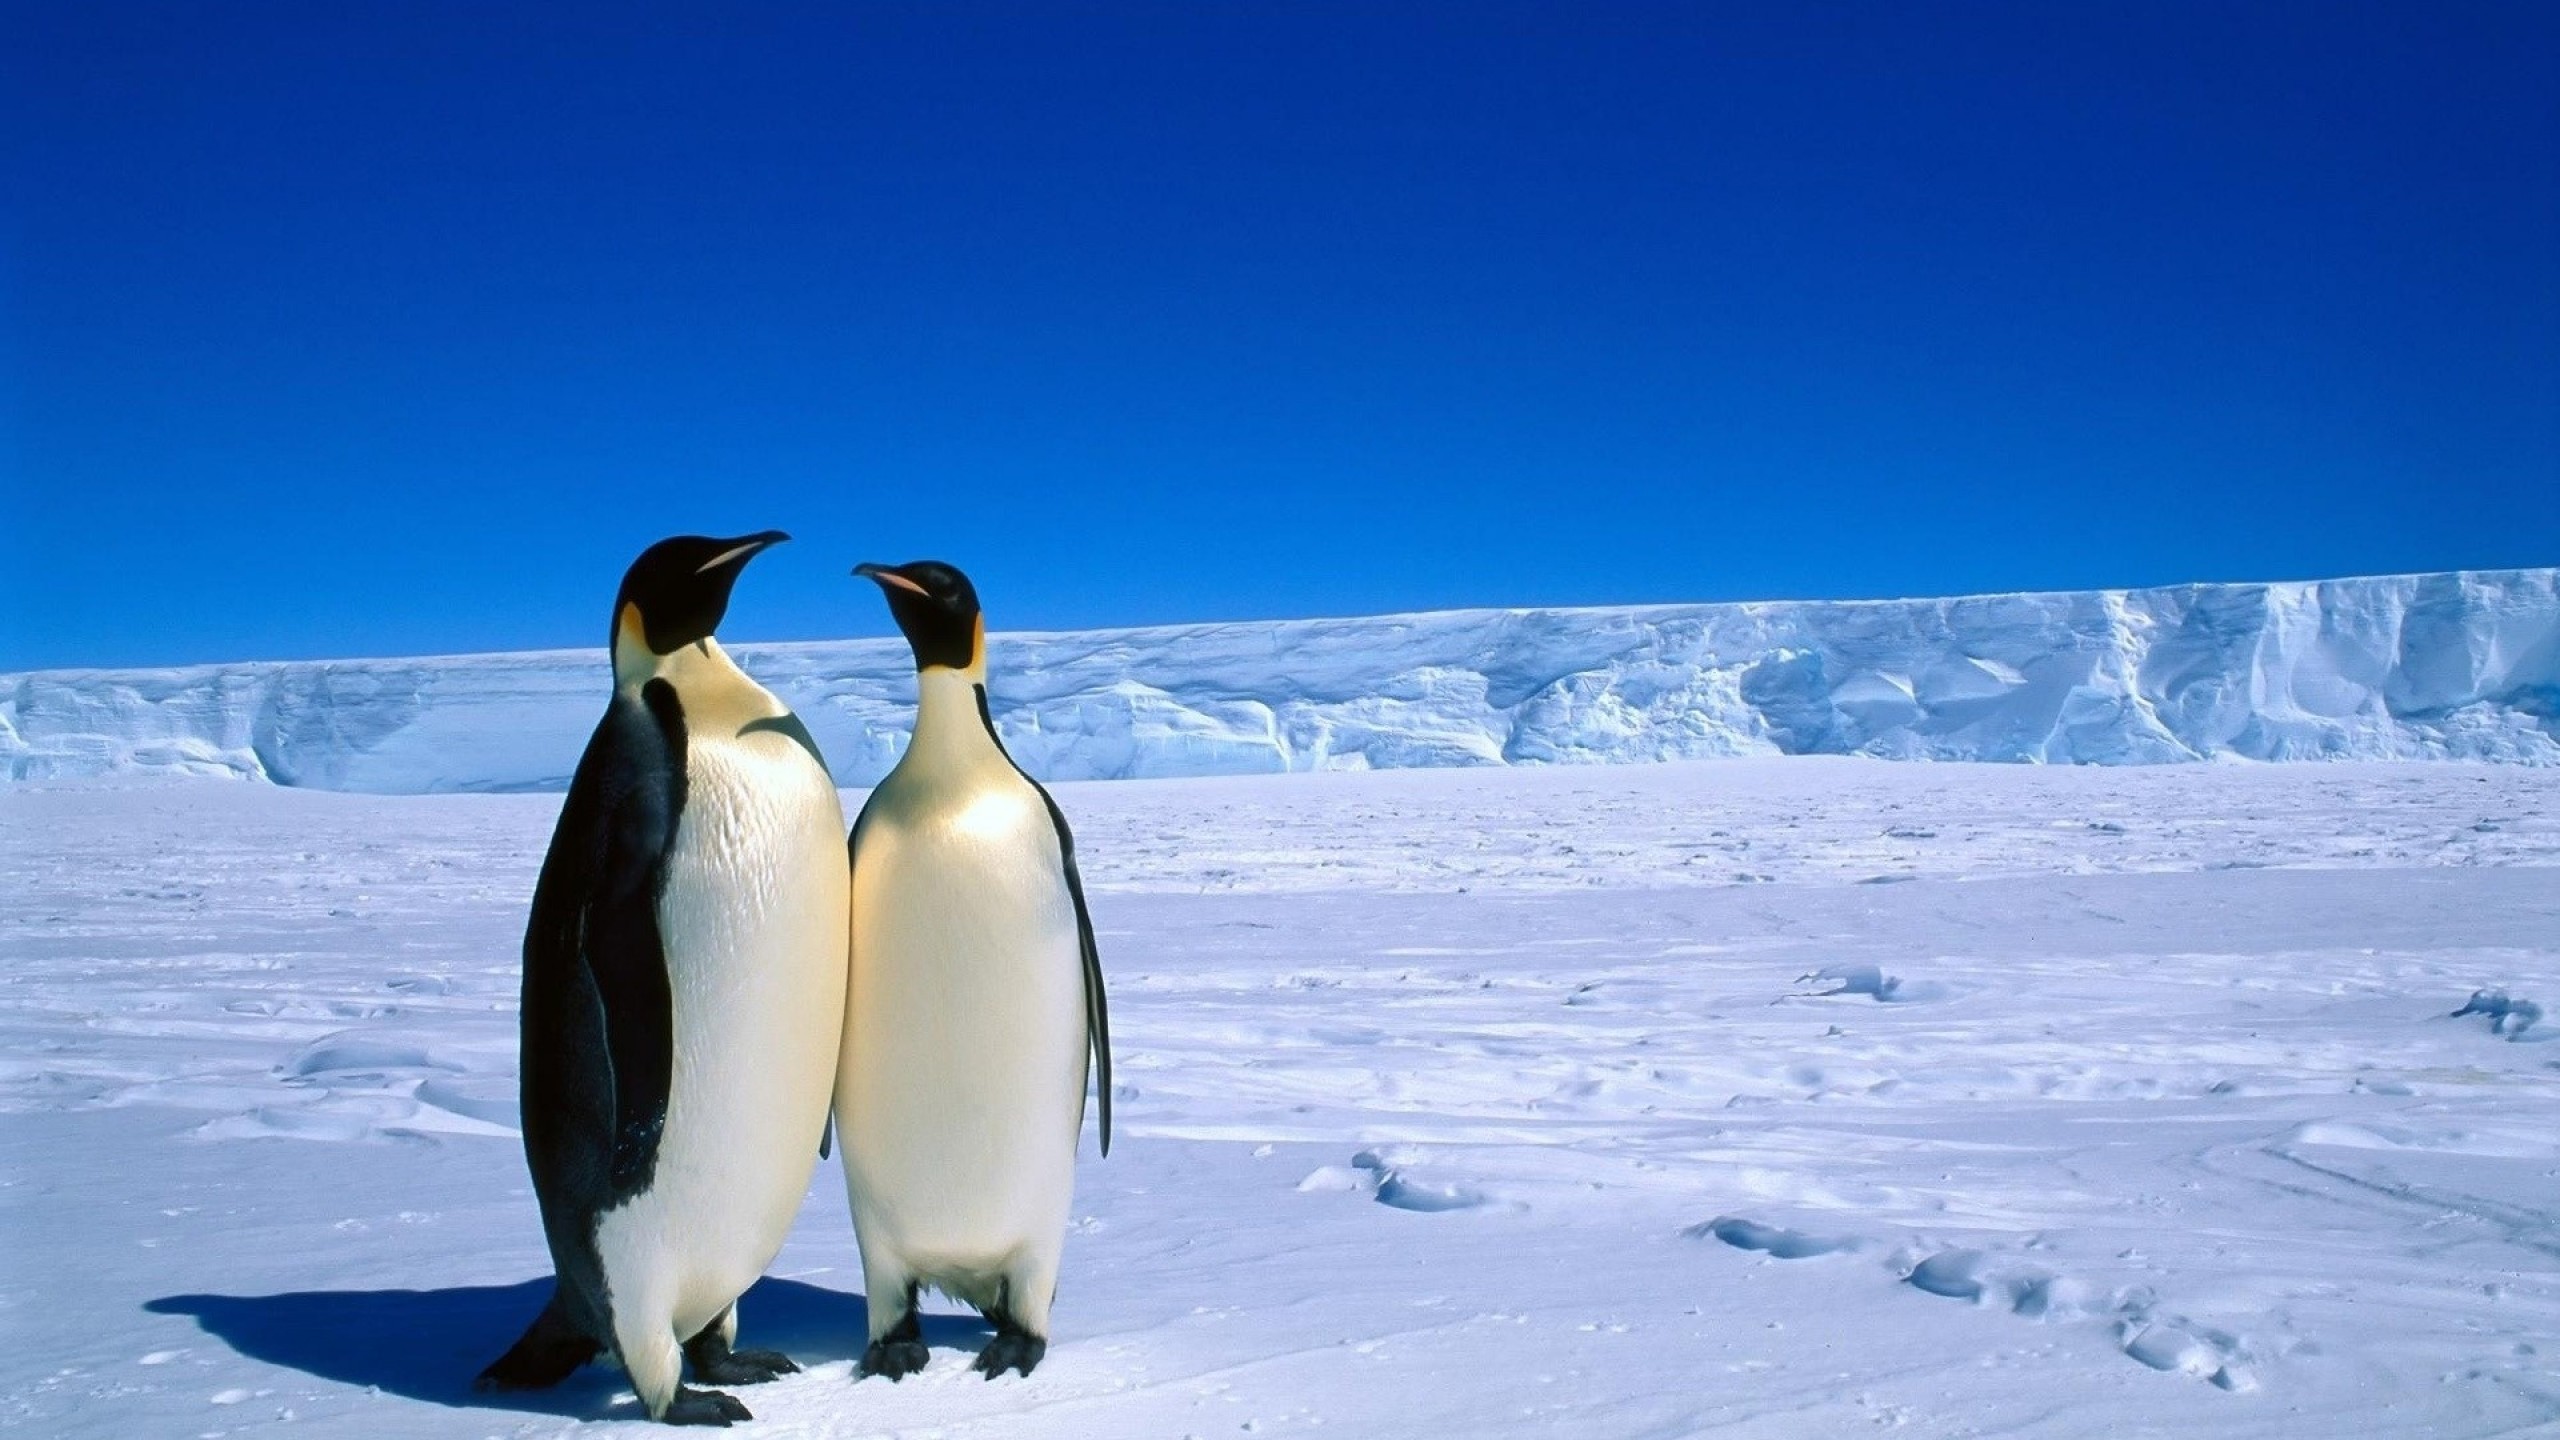 Antarctica Penguin Couple Snow Wallpaper - HD Wallpapers